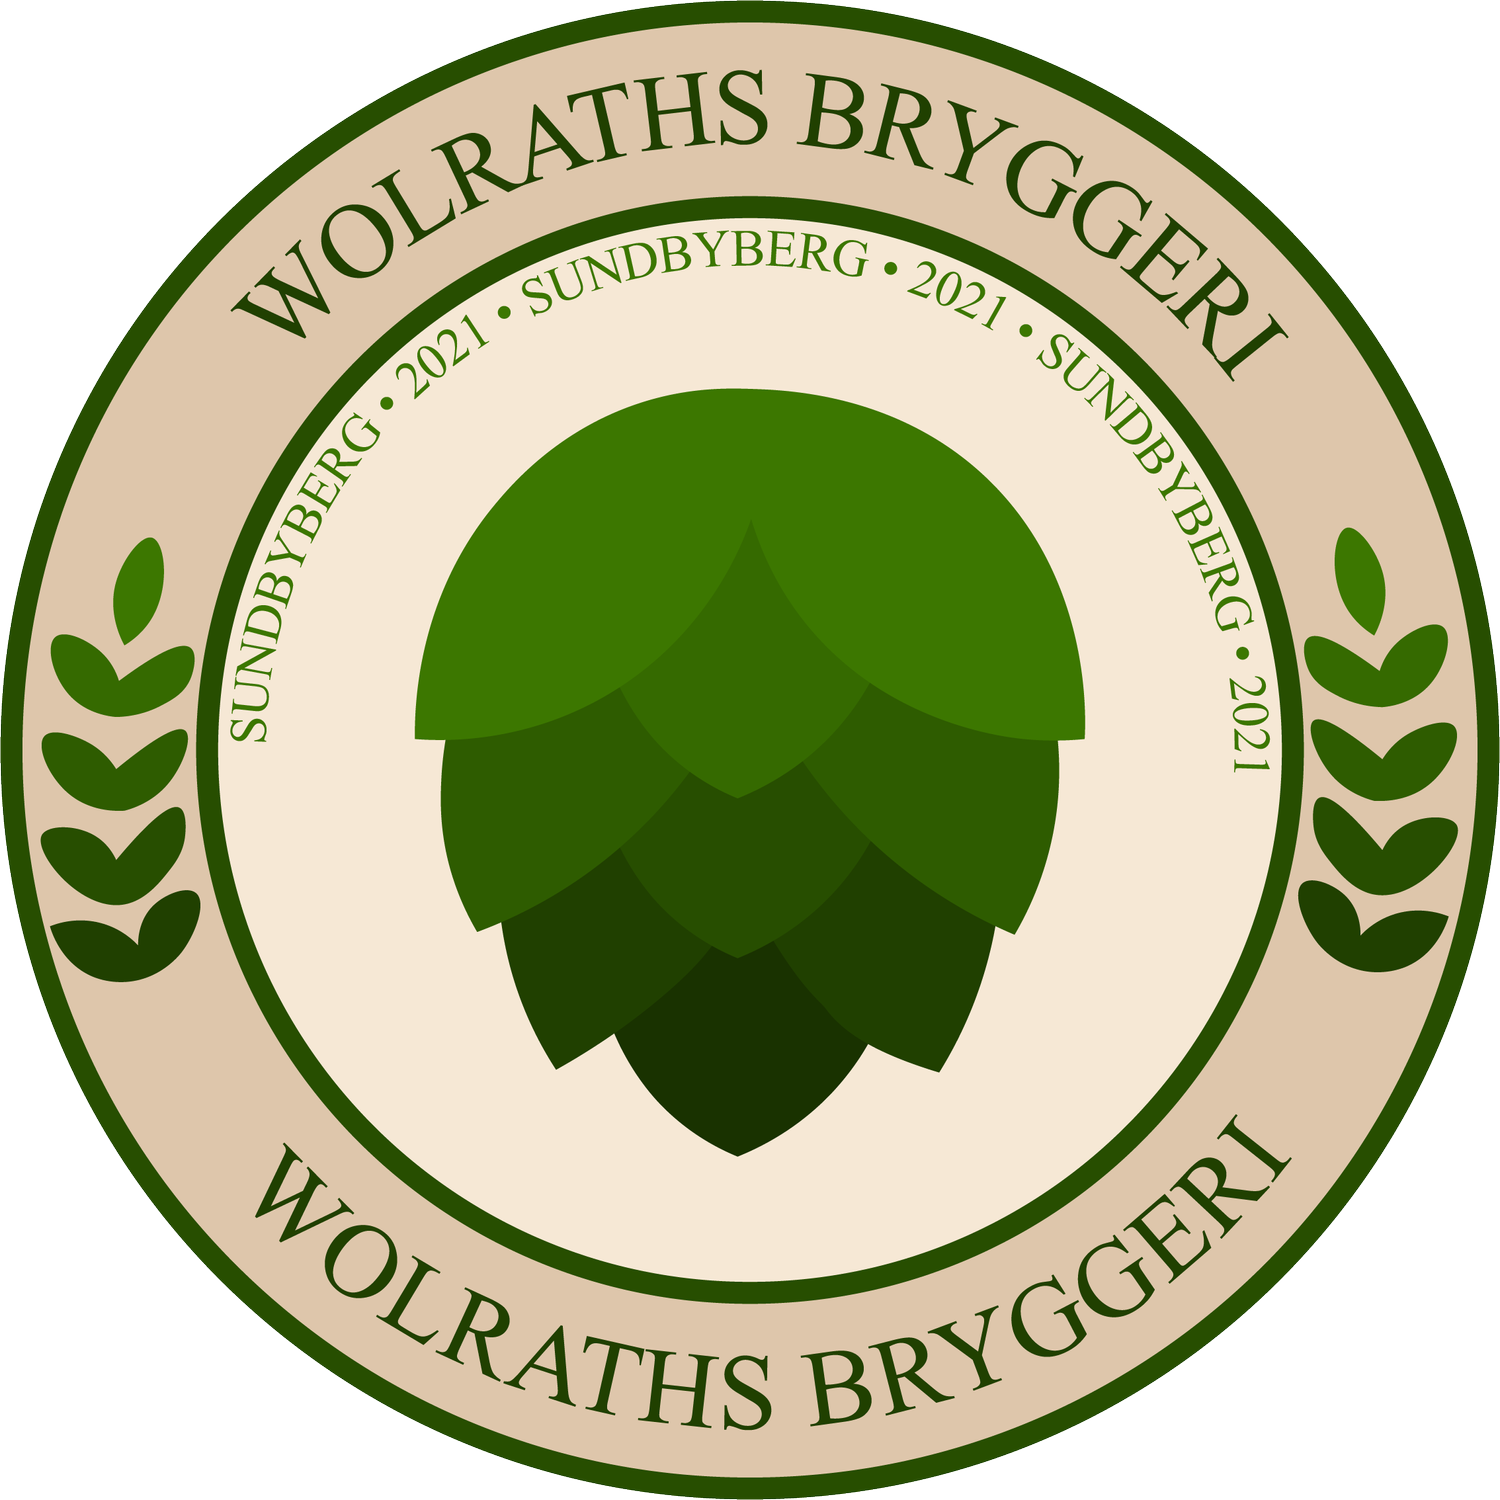 Wolraths Bryggeri